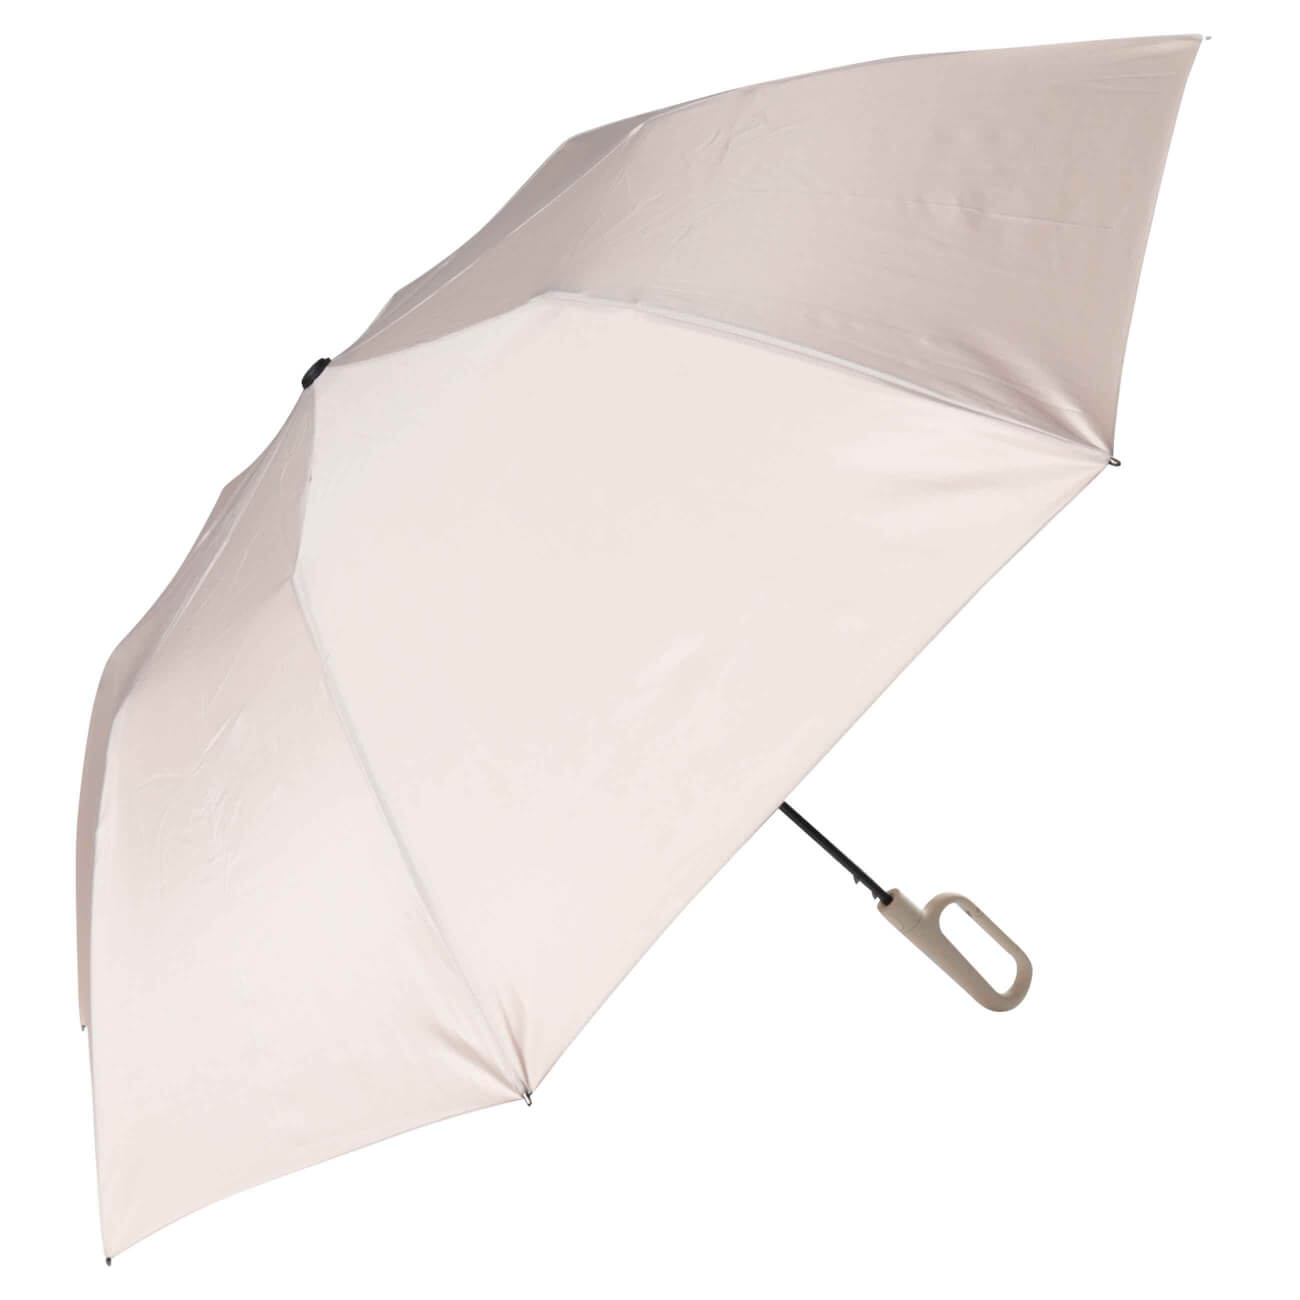 Зонт, 70 см, складной, полу-автоматический, с ручкой-карабином, эпонж, бежевый, Rainfall автоматический обратный складной зонт светодиодный фонарик десятикостный трехстворчатый автоматический бизнес зонт